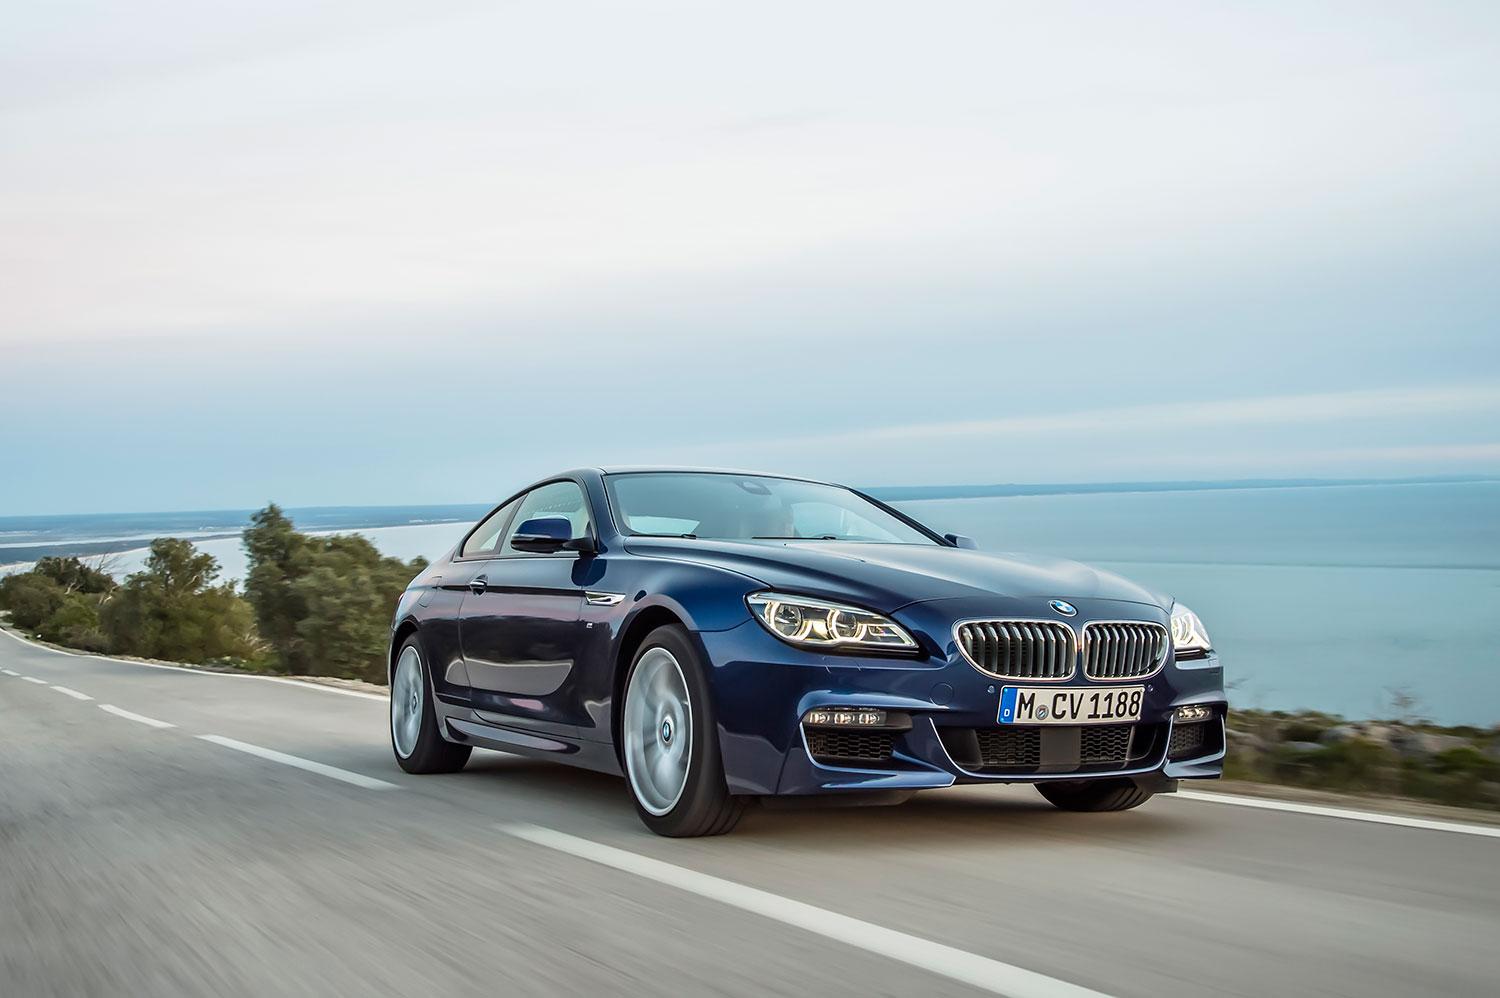 BMW:s 6-serie har genomgått ett subtilt ansiktslyft – som bara en kännare kan se.